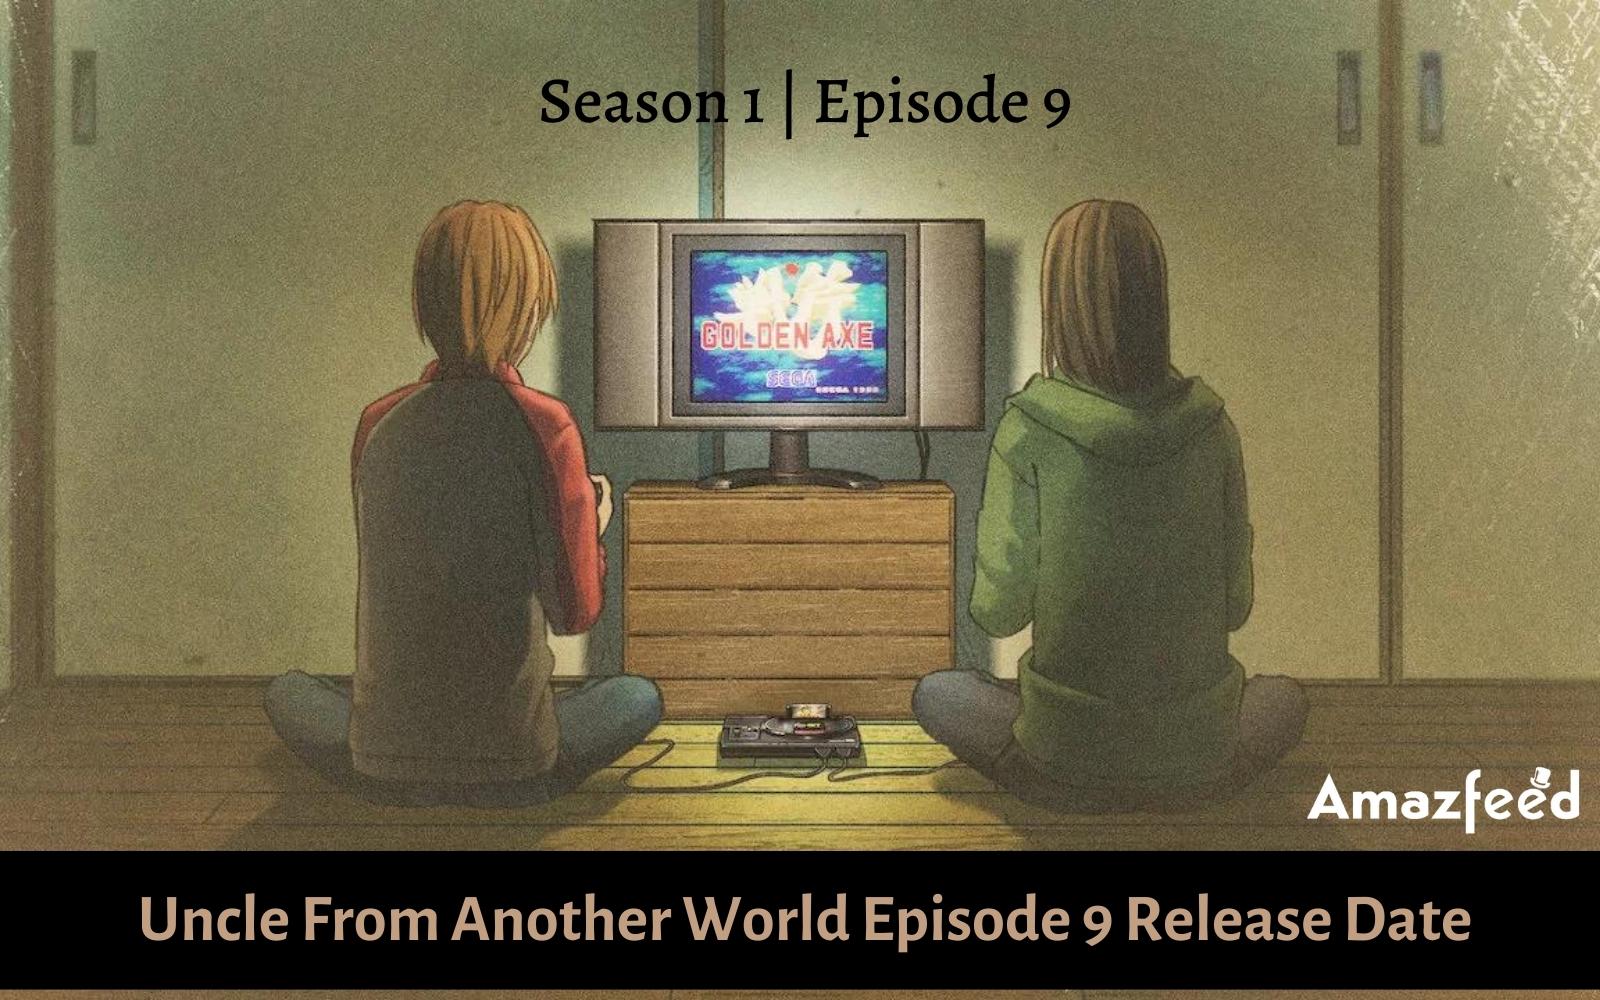 Isekai Shoukan wa Nidome Desu Episode 9 Release Date, Spoiler, Recap &  Trailer » Amazfeed